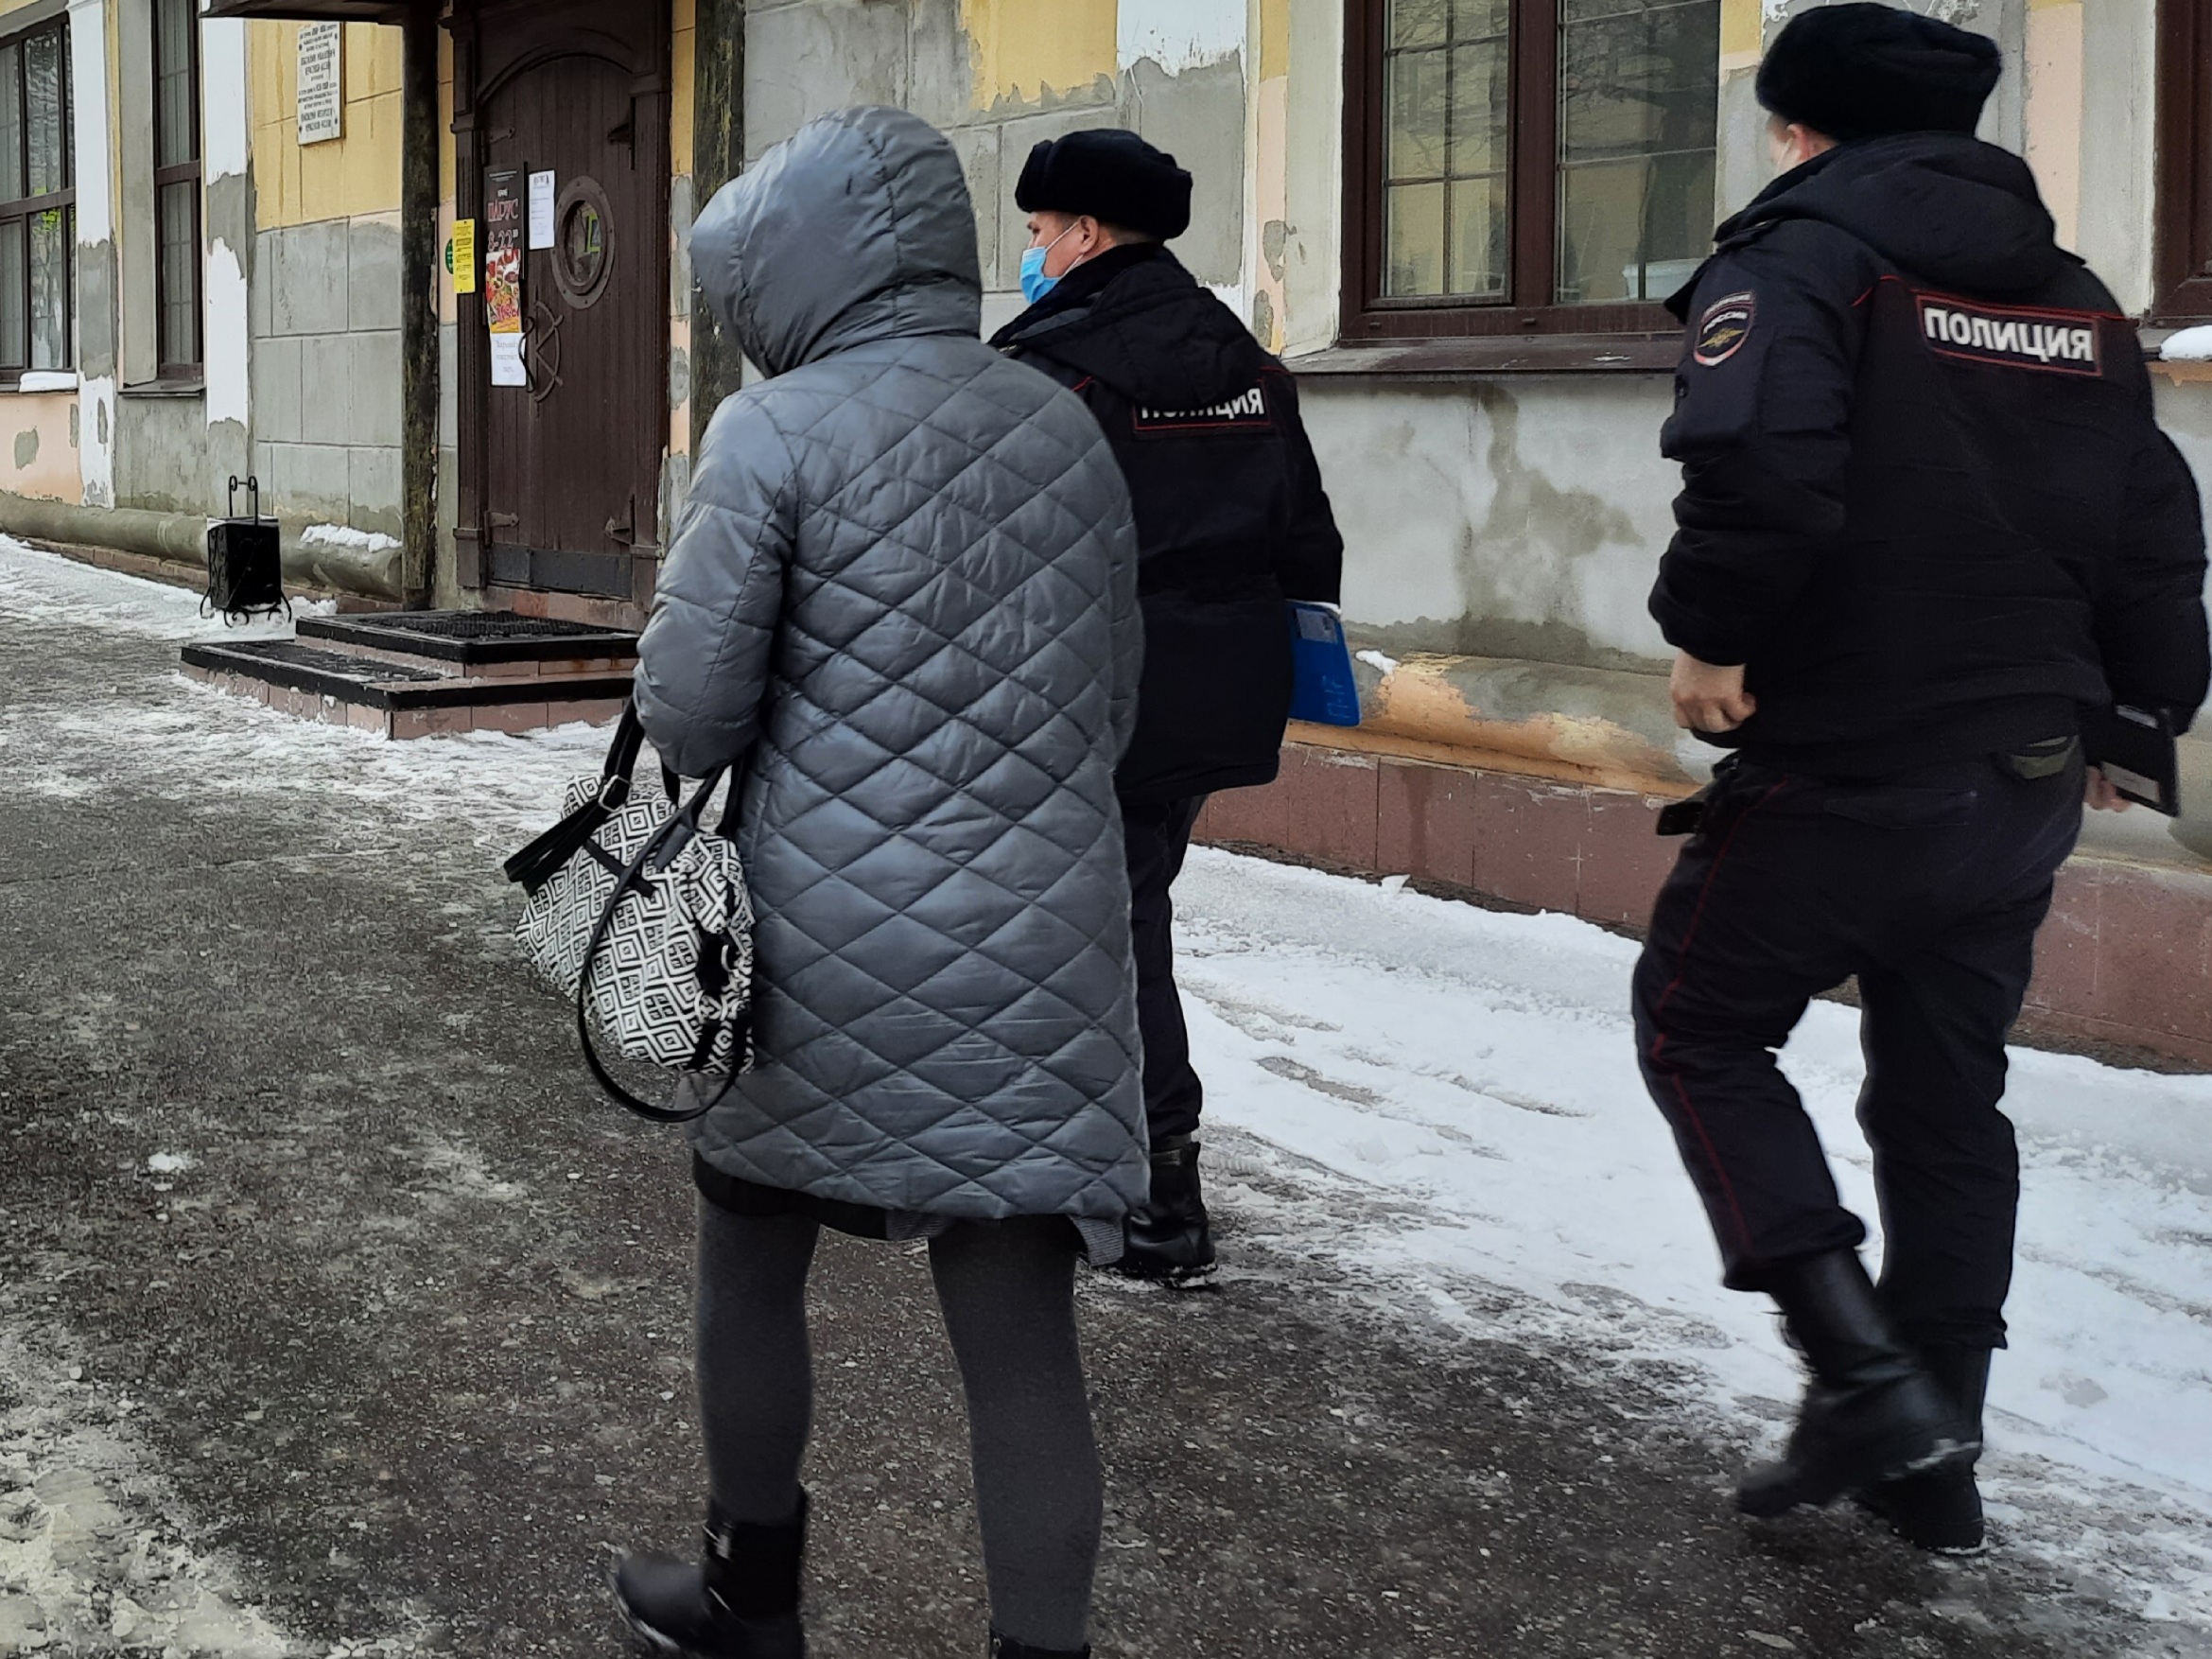 Нижегородские полицейские успели спасти деньги женщины от мошенников, но не все